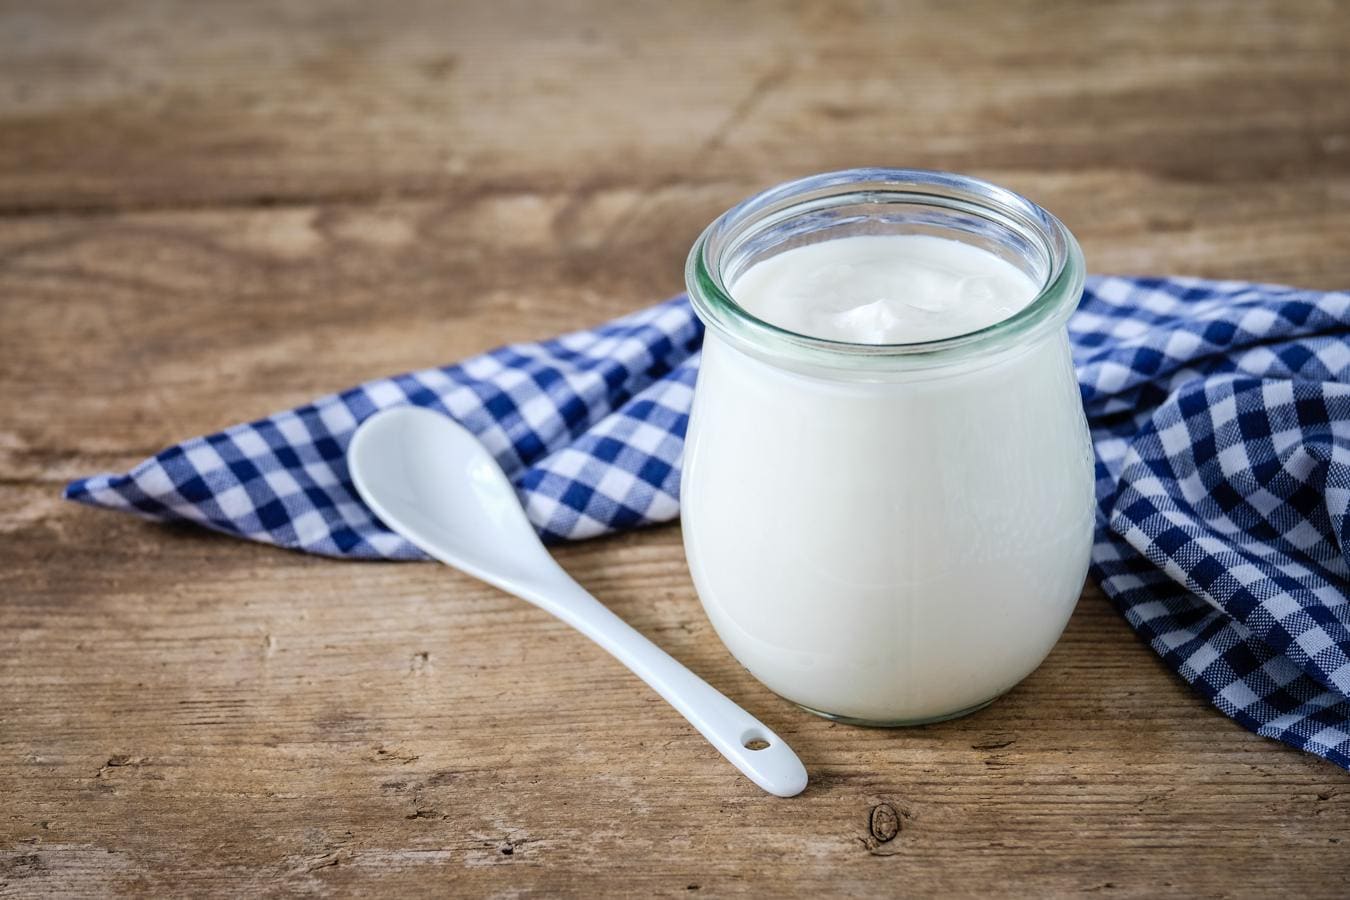 Yogur. Consideramos el yogur el alimento probiótico por excelencia. Una de las ventajas de consumirlo es que posee una proteína más digerible que la leche (con menos lactosa), lo que hace que se absorba mejor en el organismo.